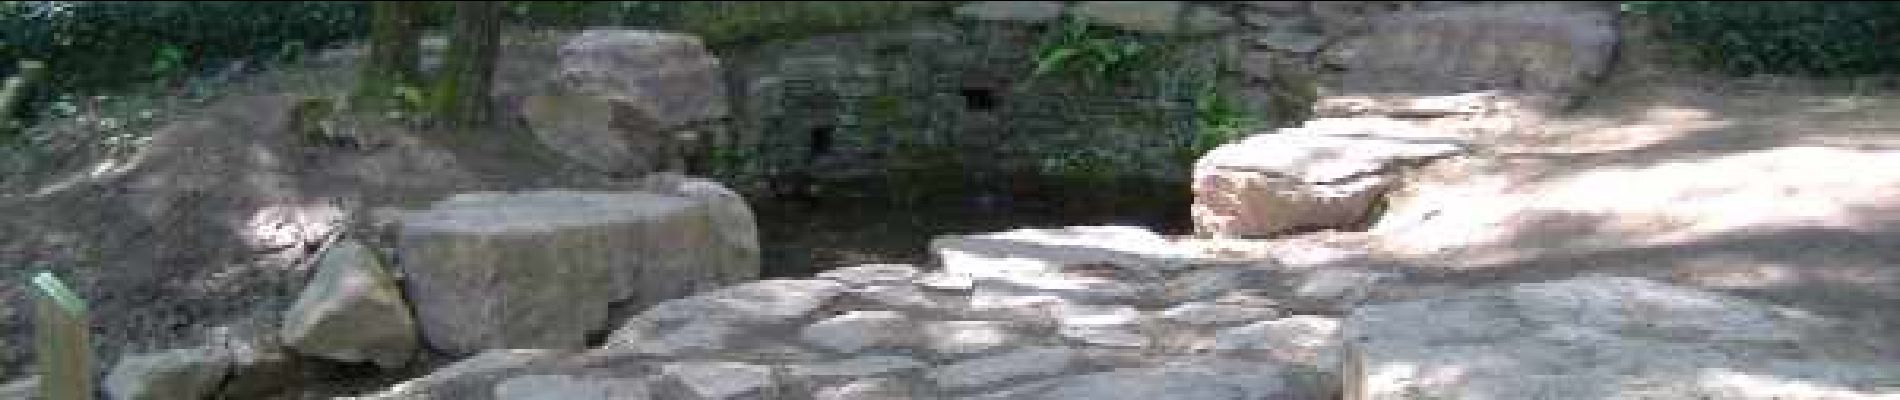 Punto de interés Paimpont - La fontaine de jouvence - Photo